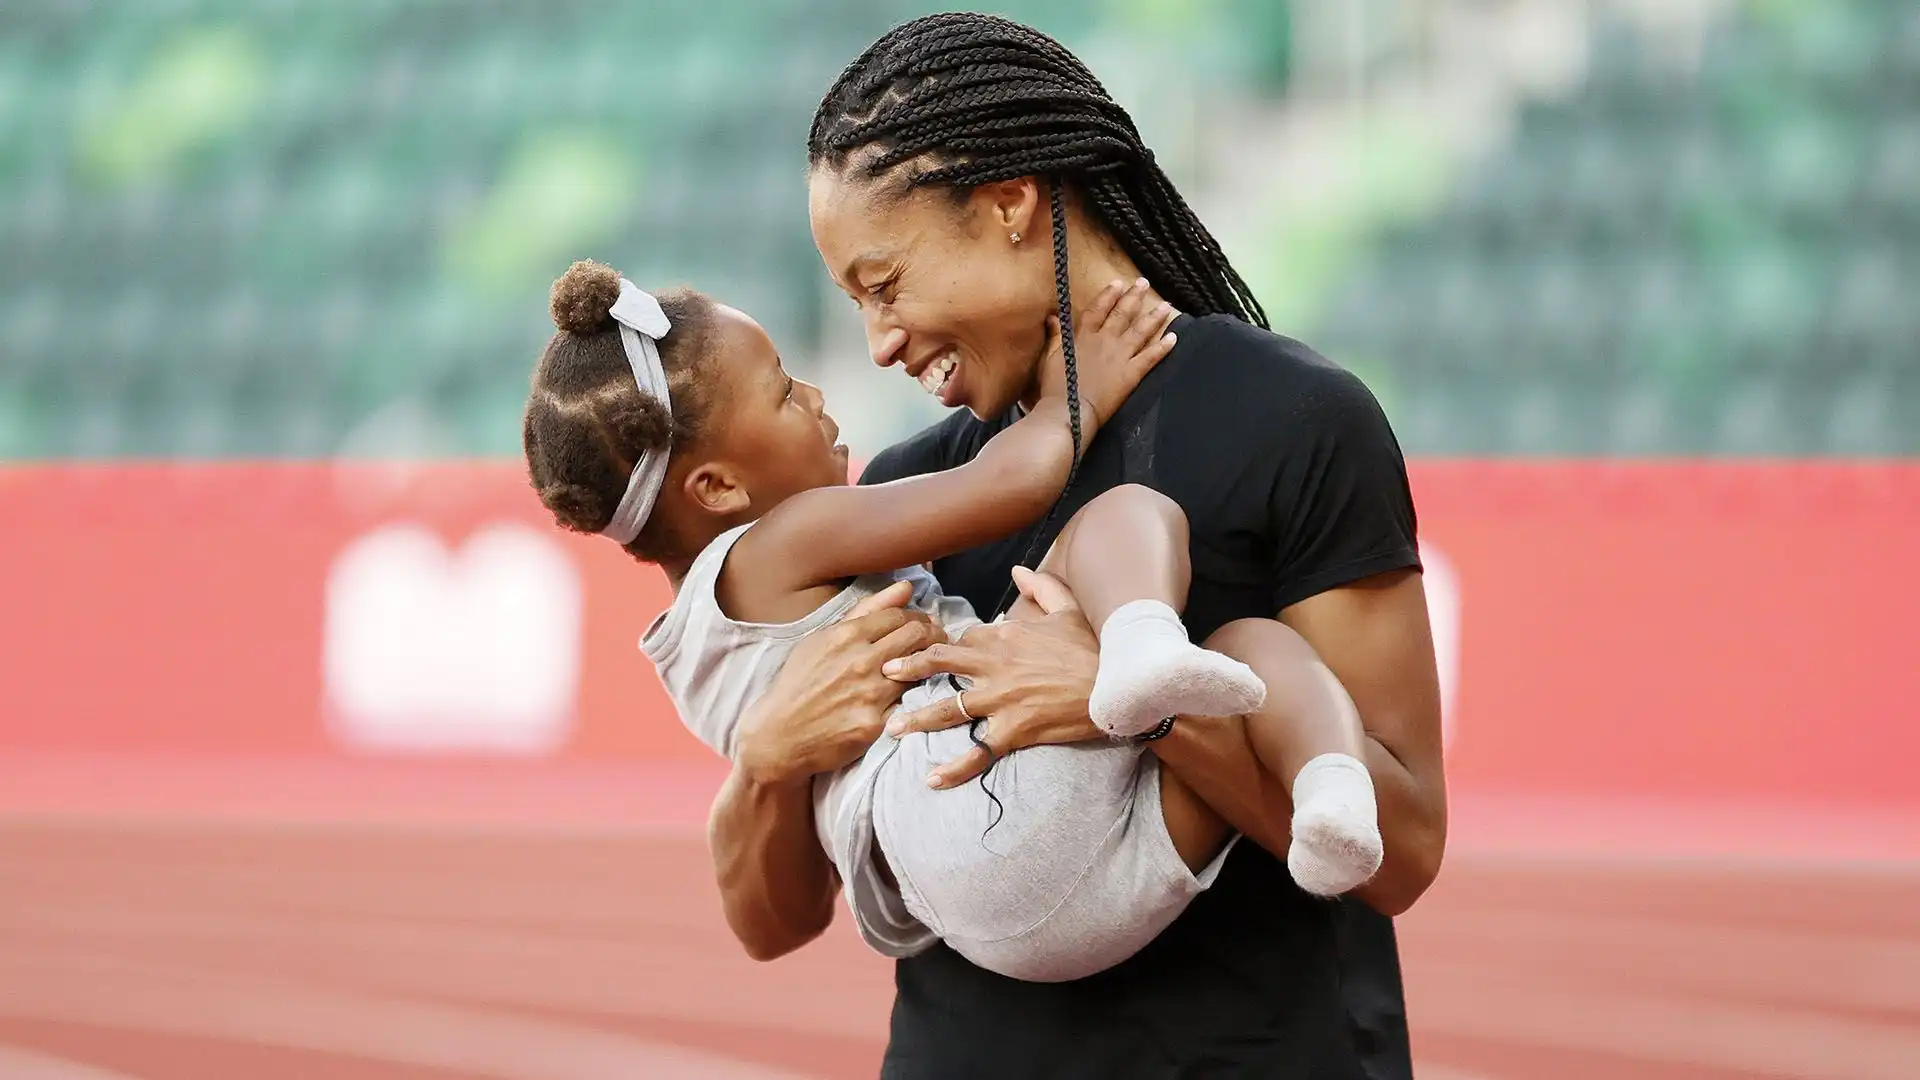 Nel 2019, Allyson Felix è diventata la prima madre a vincere una medaglia d'oro ai Campionati mondiali di atletica leggera